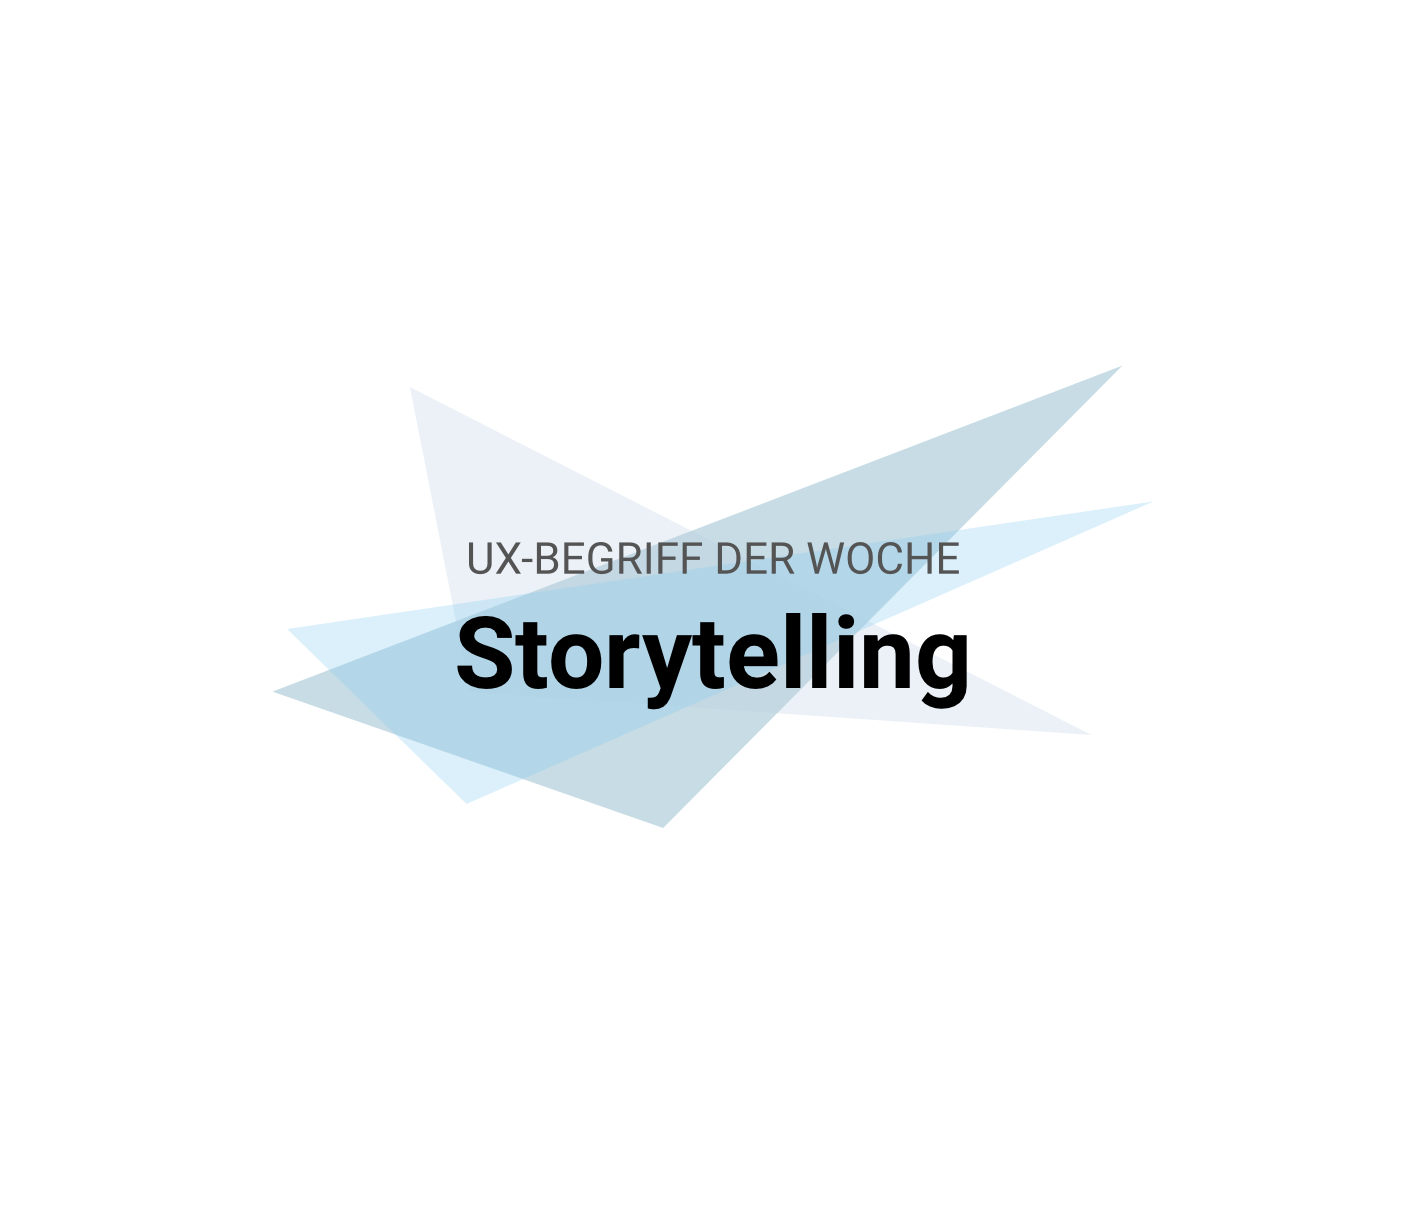 UX-Begriffe kurz erklärt: "Storytelling"